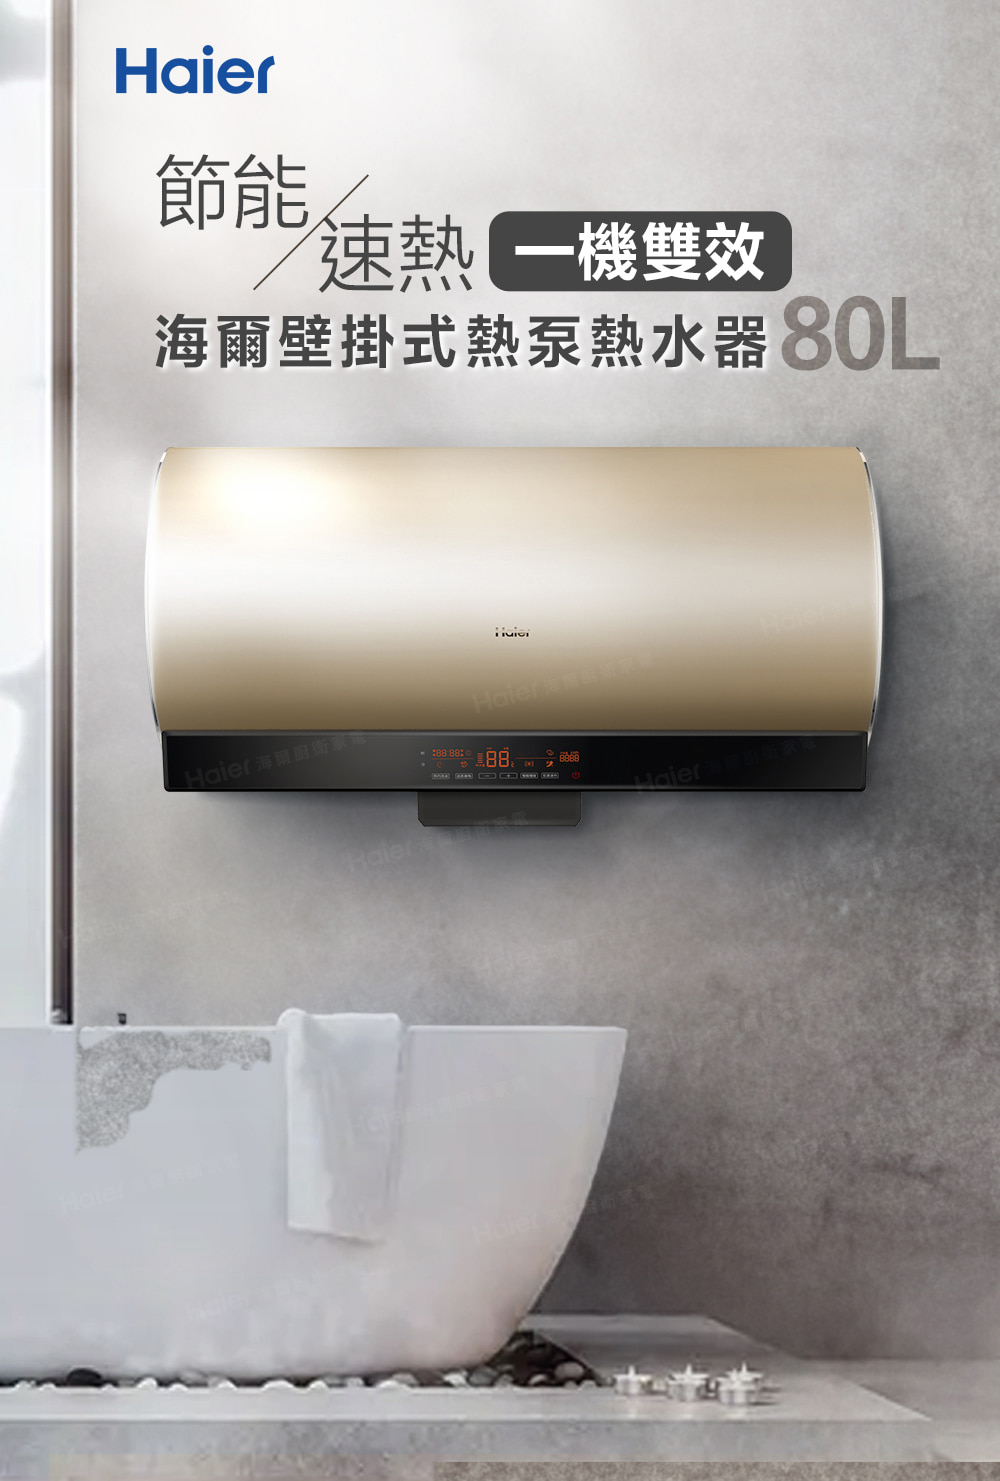 節能 速熱一機雙效 海爾壁掛式熱泵熱水器80L 